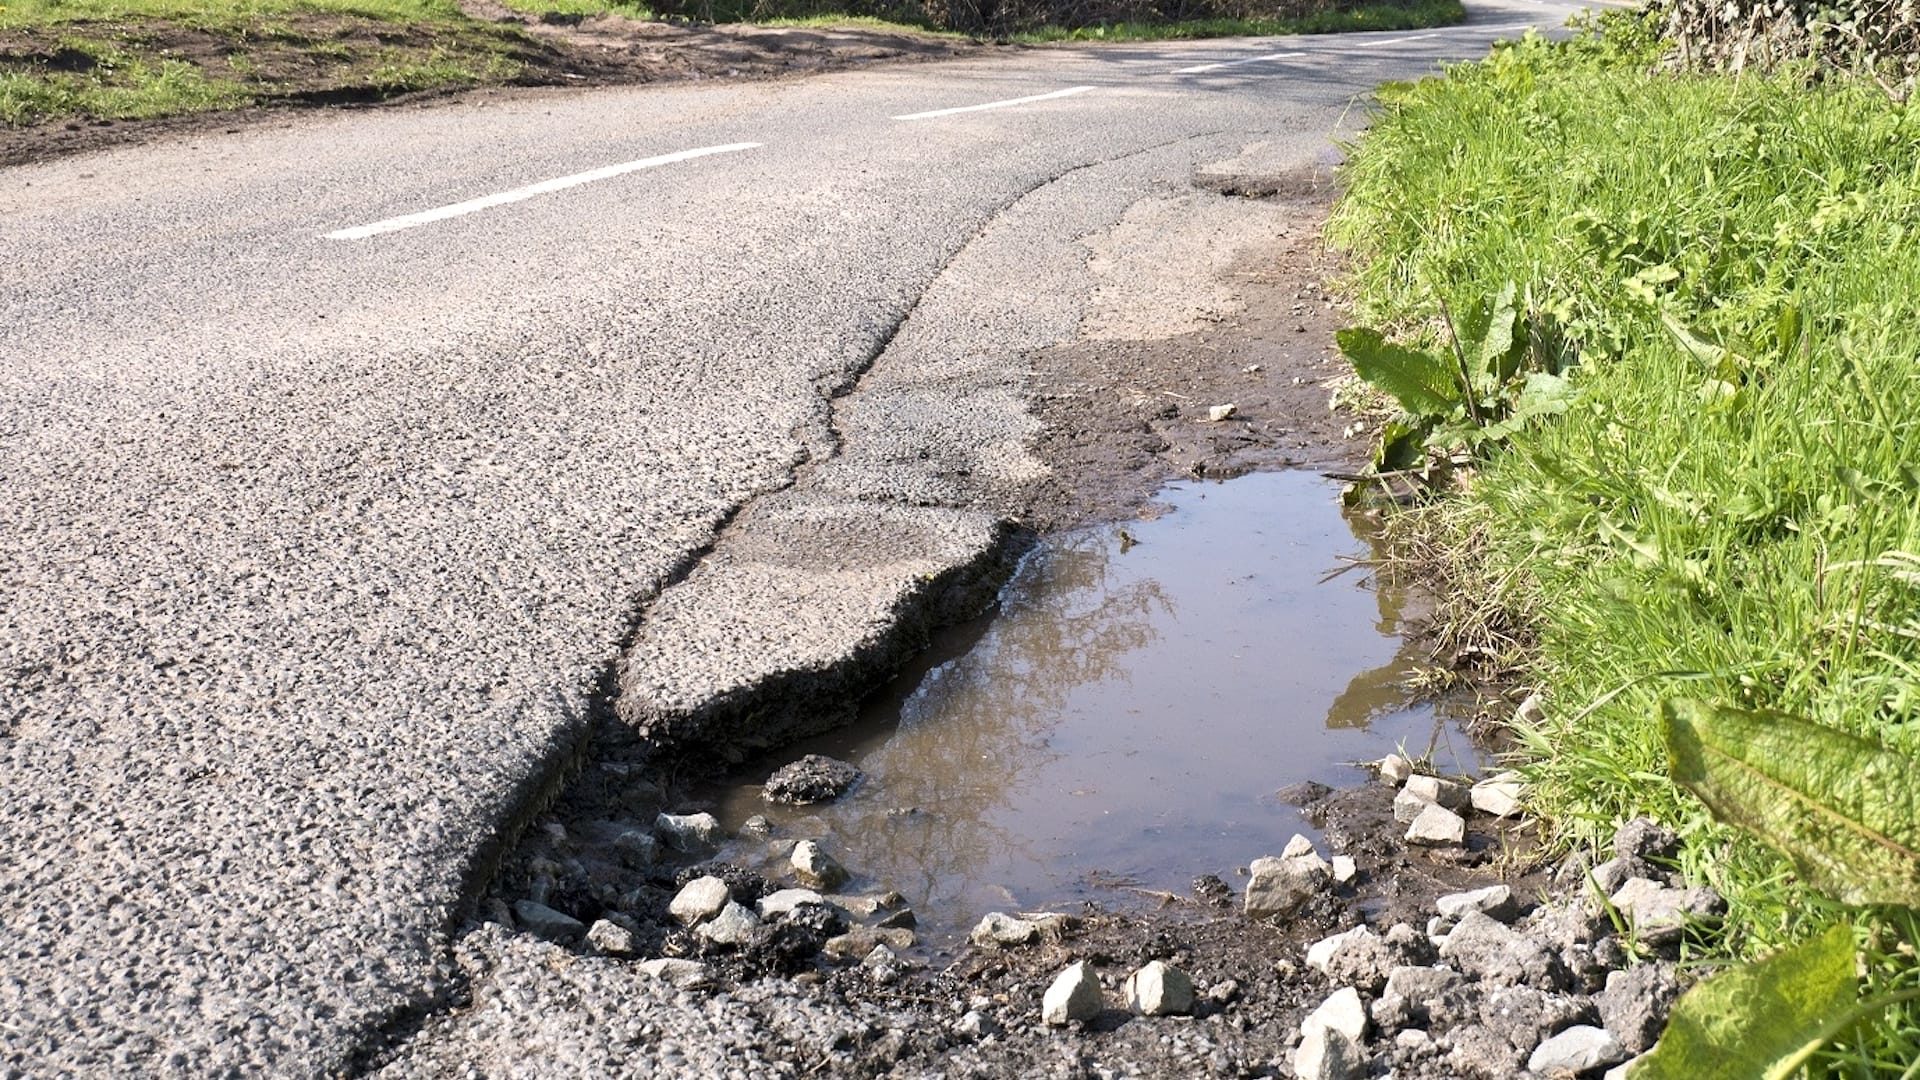 Cost of UK pothole damage